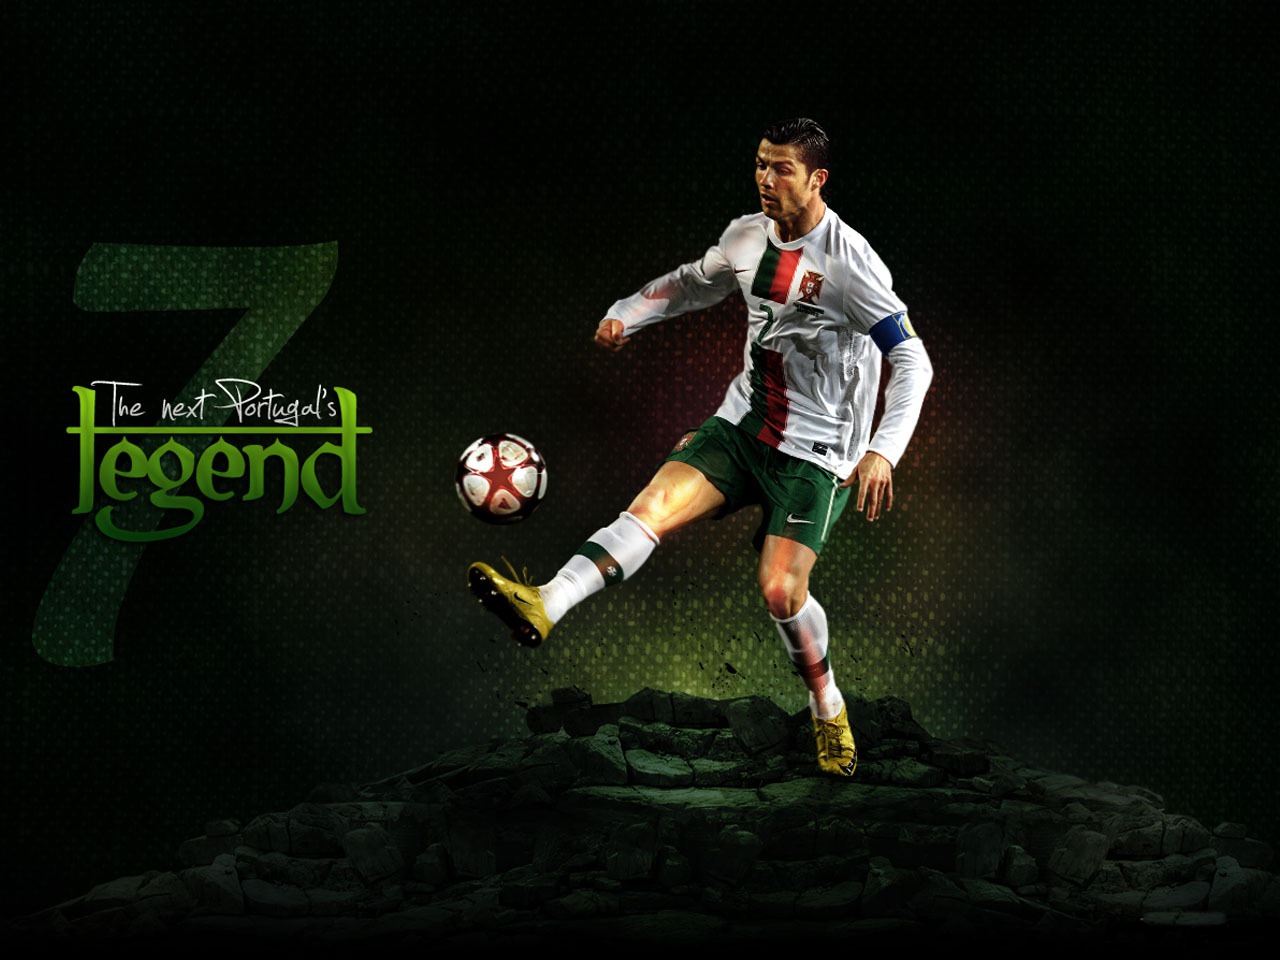 Cristiano Ronaldo New HD Wallpaper